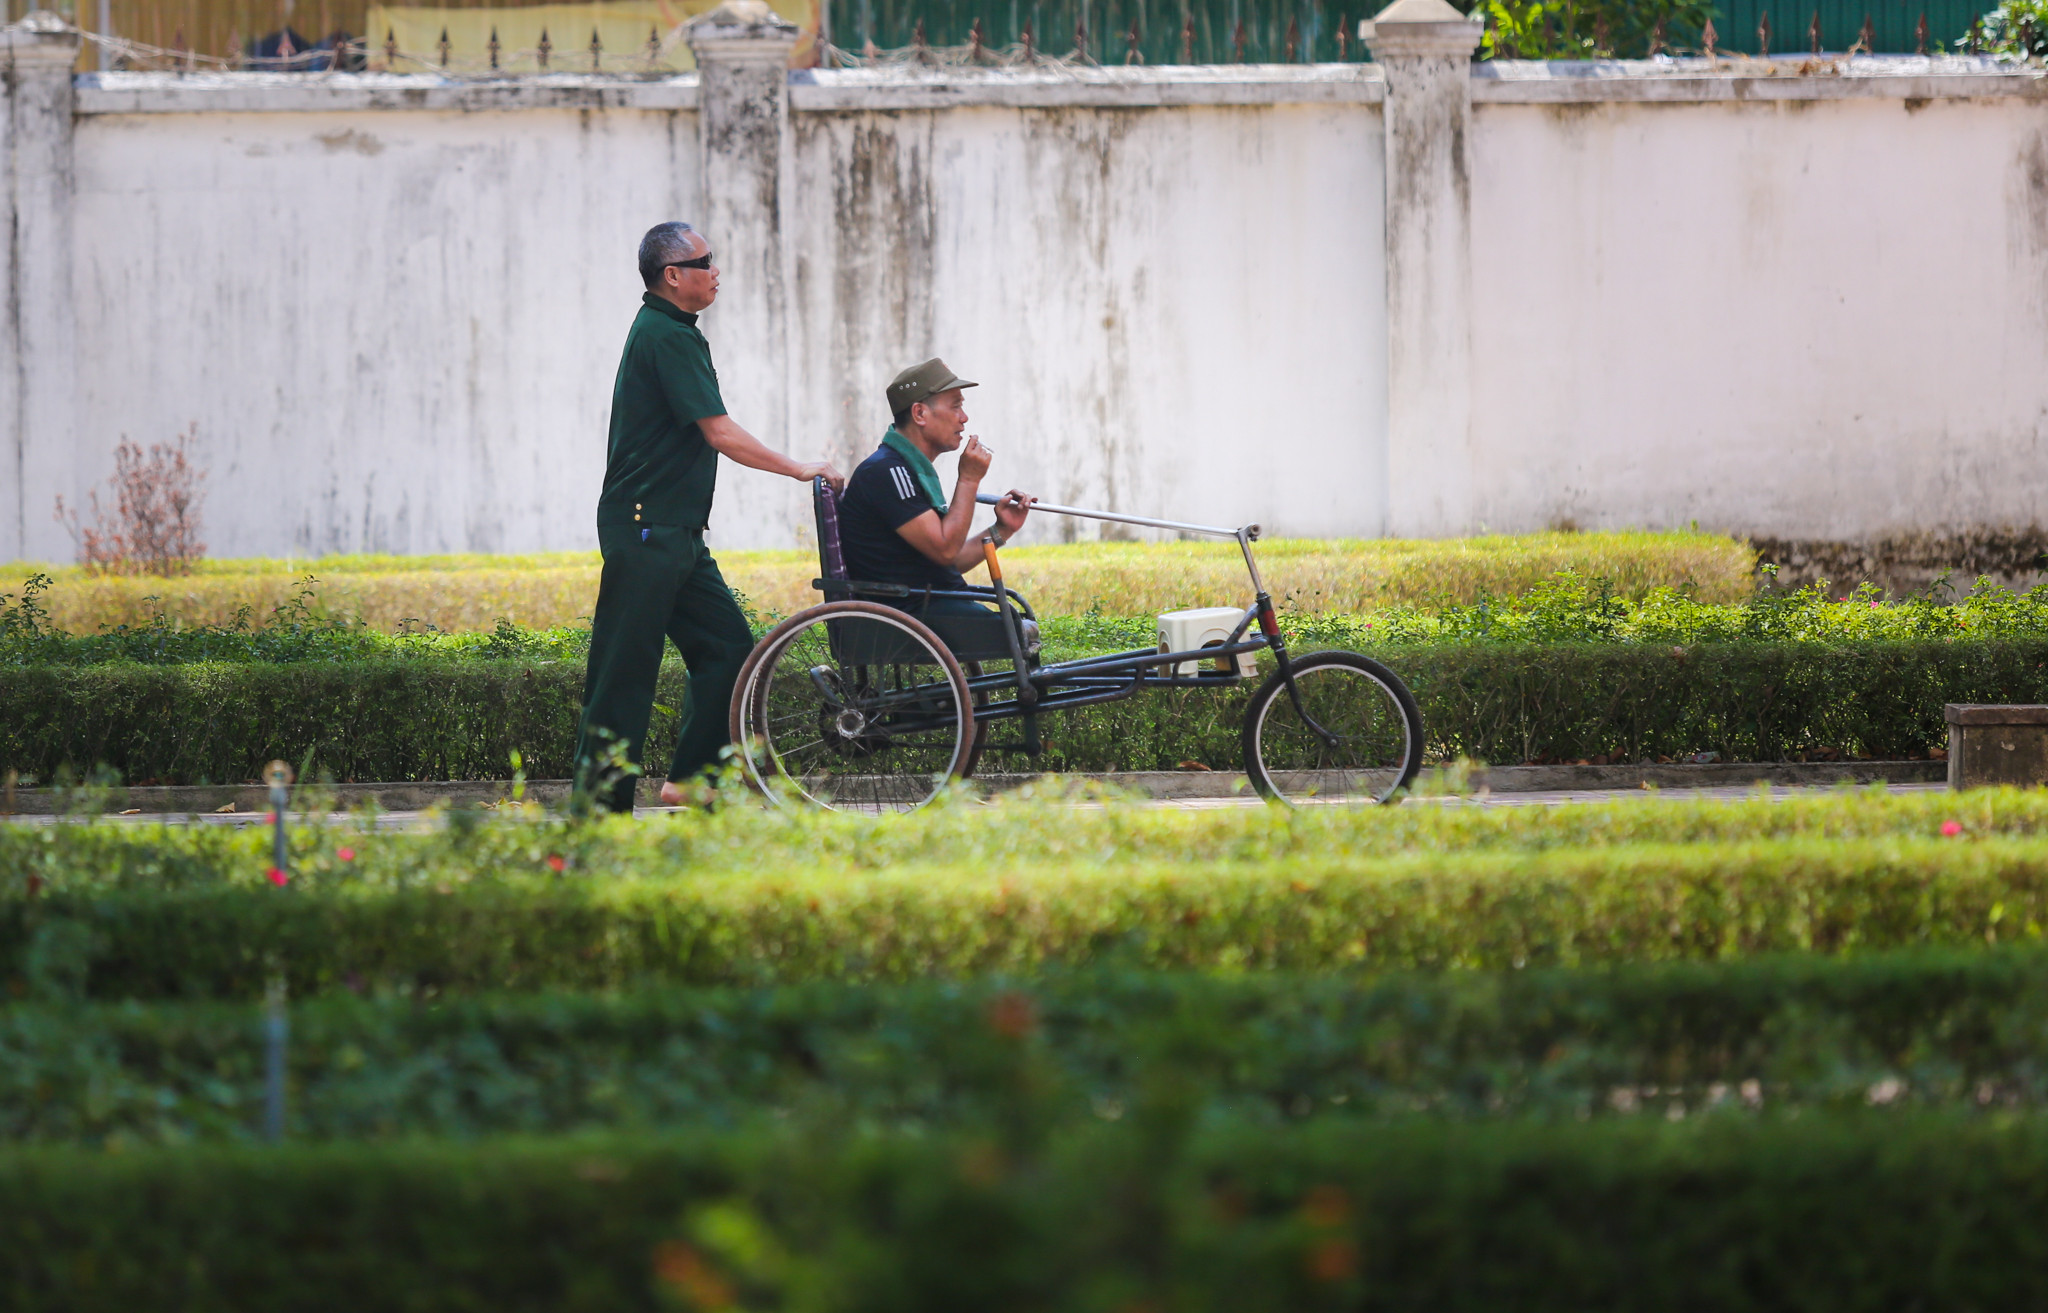 Ngay cạnh bên Khu điều dưỡng Thuong binh tâm thần kinh là Trung tâm điều dưỡng thương bệnh binh, nơi đây chăm sóc, điều trị 70 thương bệnh binh nặng đến từ nhiều huyện thành thị Nghệ An và Hà Tĩnh. 